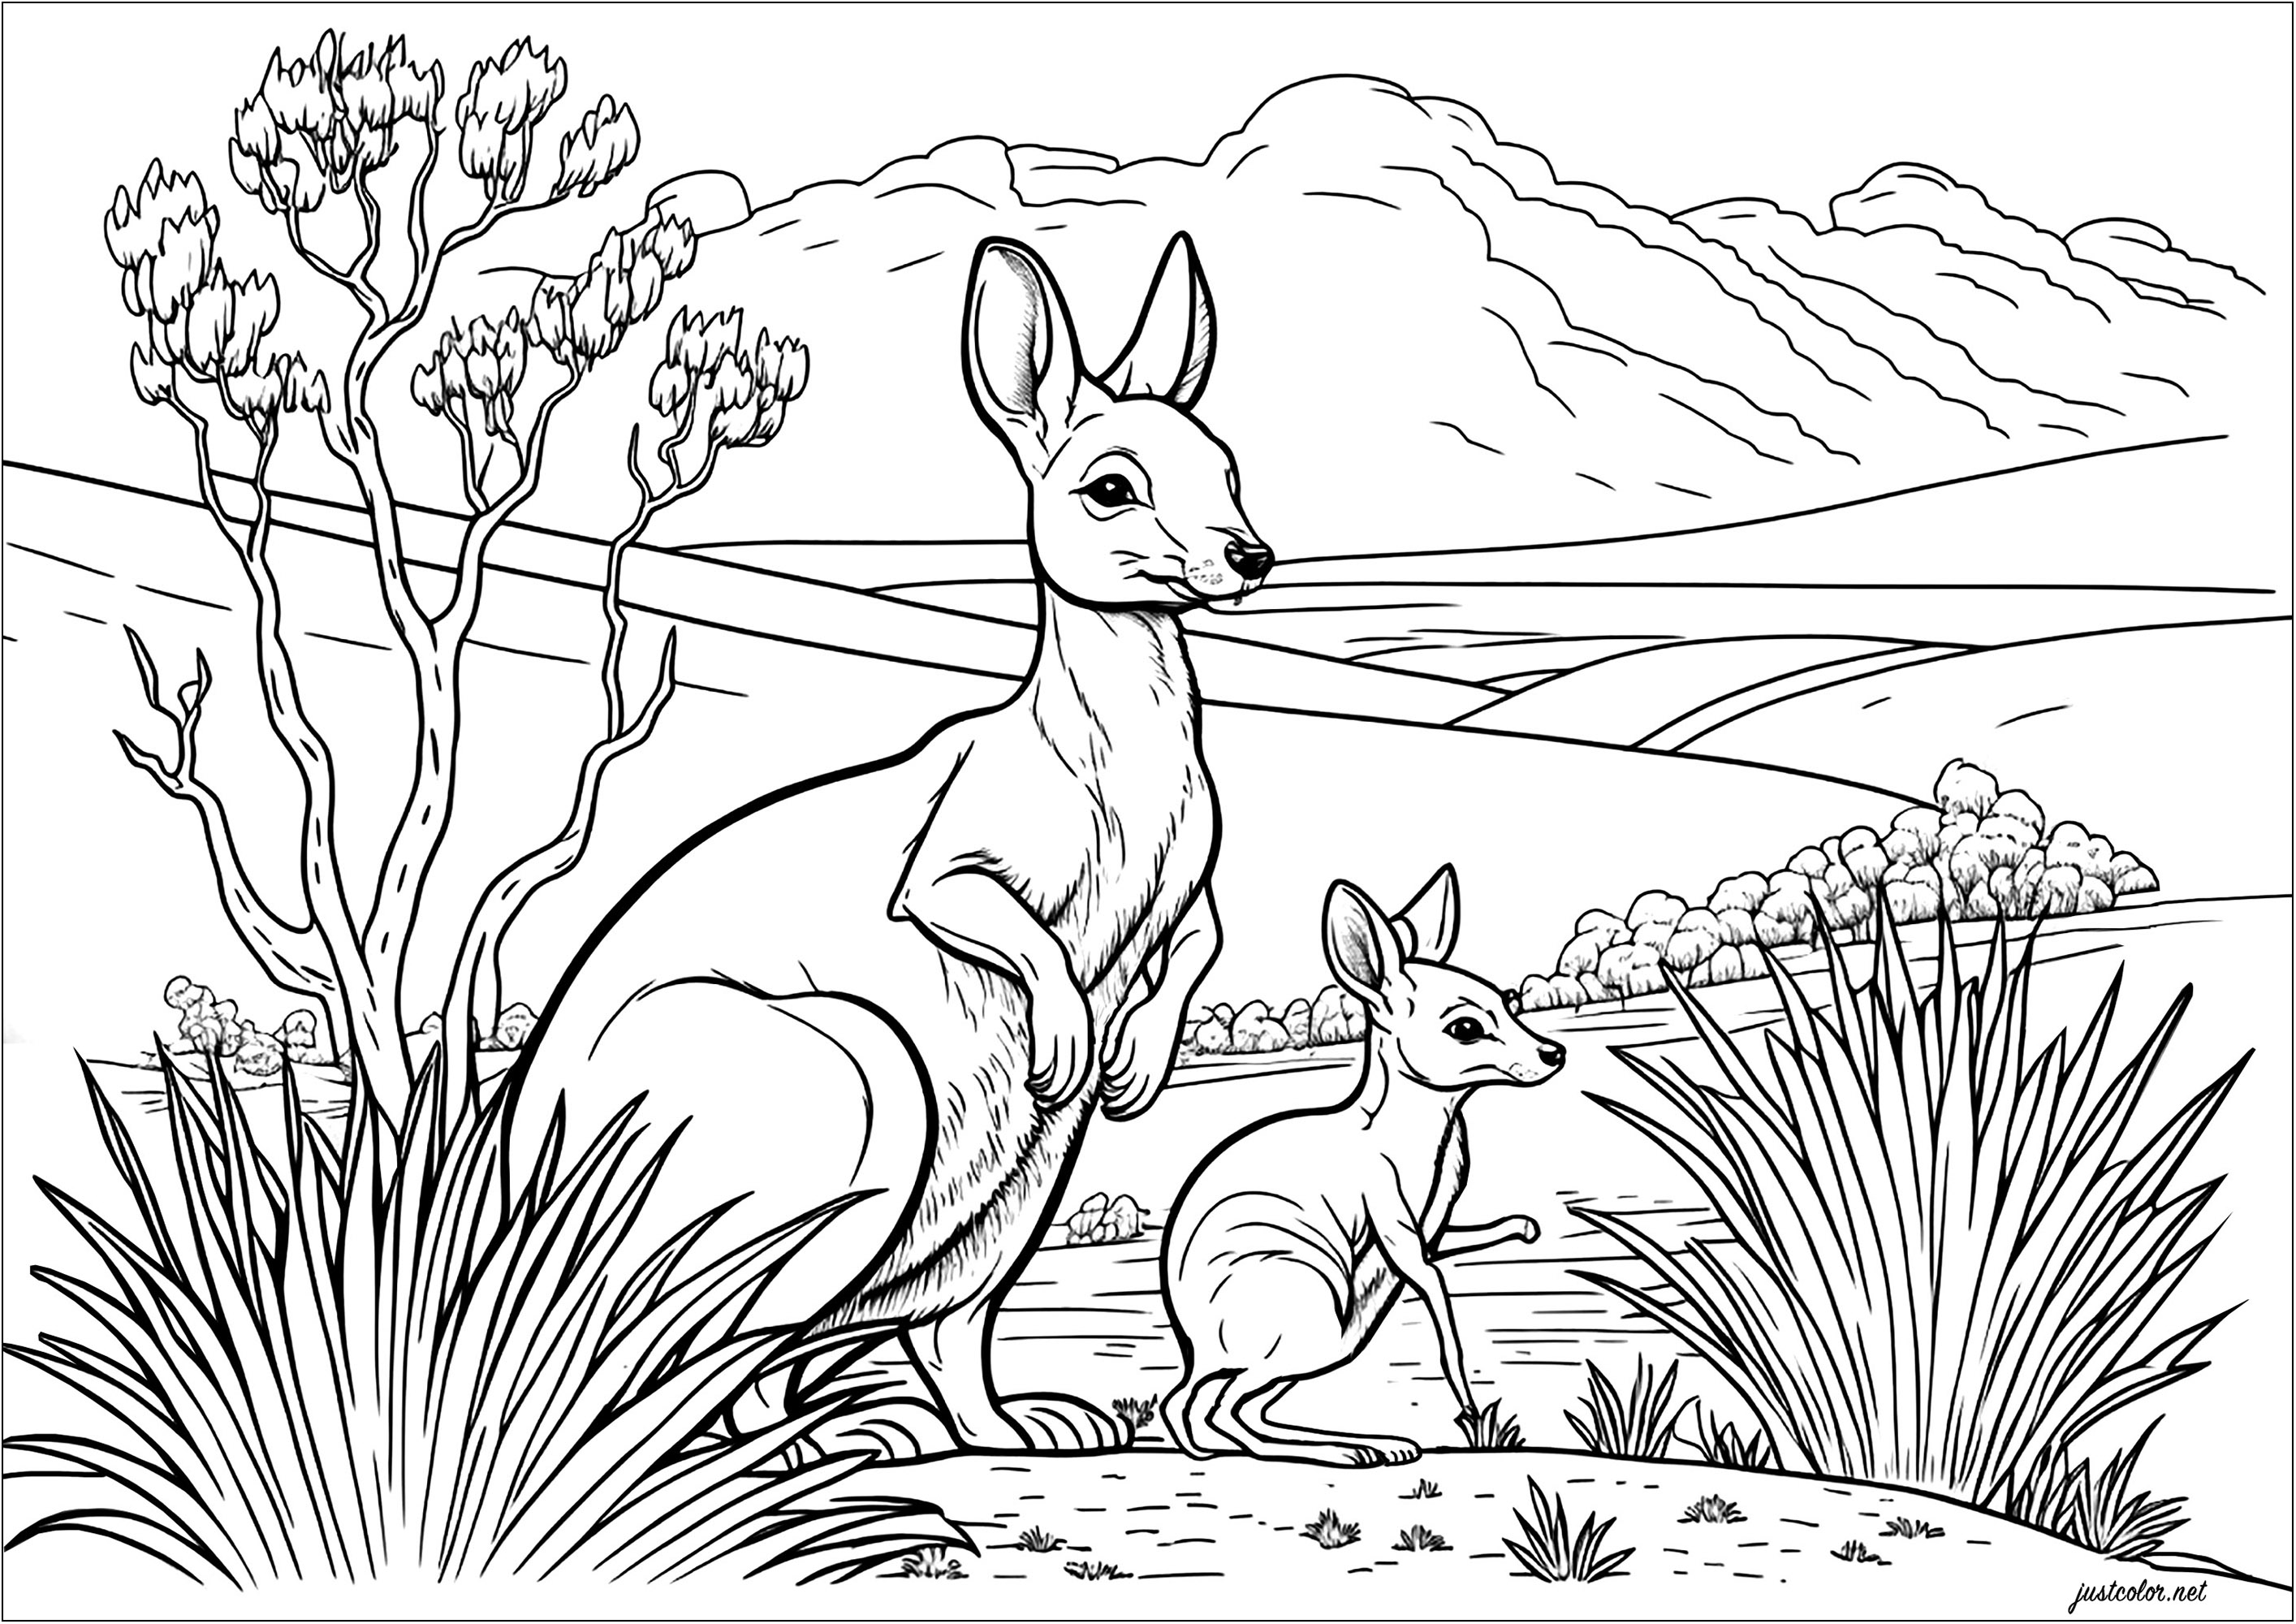 Coloriez cette mère kangourou et son petit. Explorez le paysage du désert australien avec des cactus et un ciel ensoleillé, en utilisant votre imagination pour donner vie à cette scène. Laissez votre créativité s'exprimer avec les couleurs et rejoignez l'aventure sautillante de ces deux kangourous.